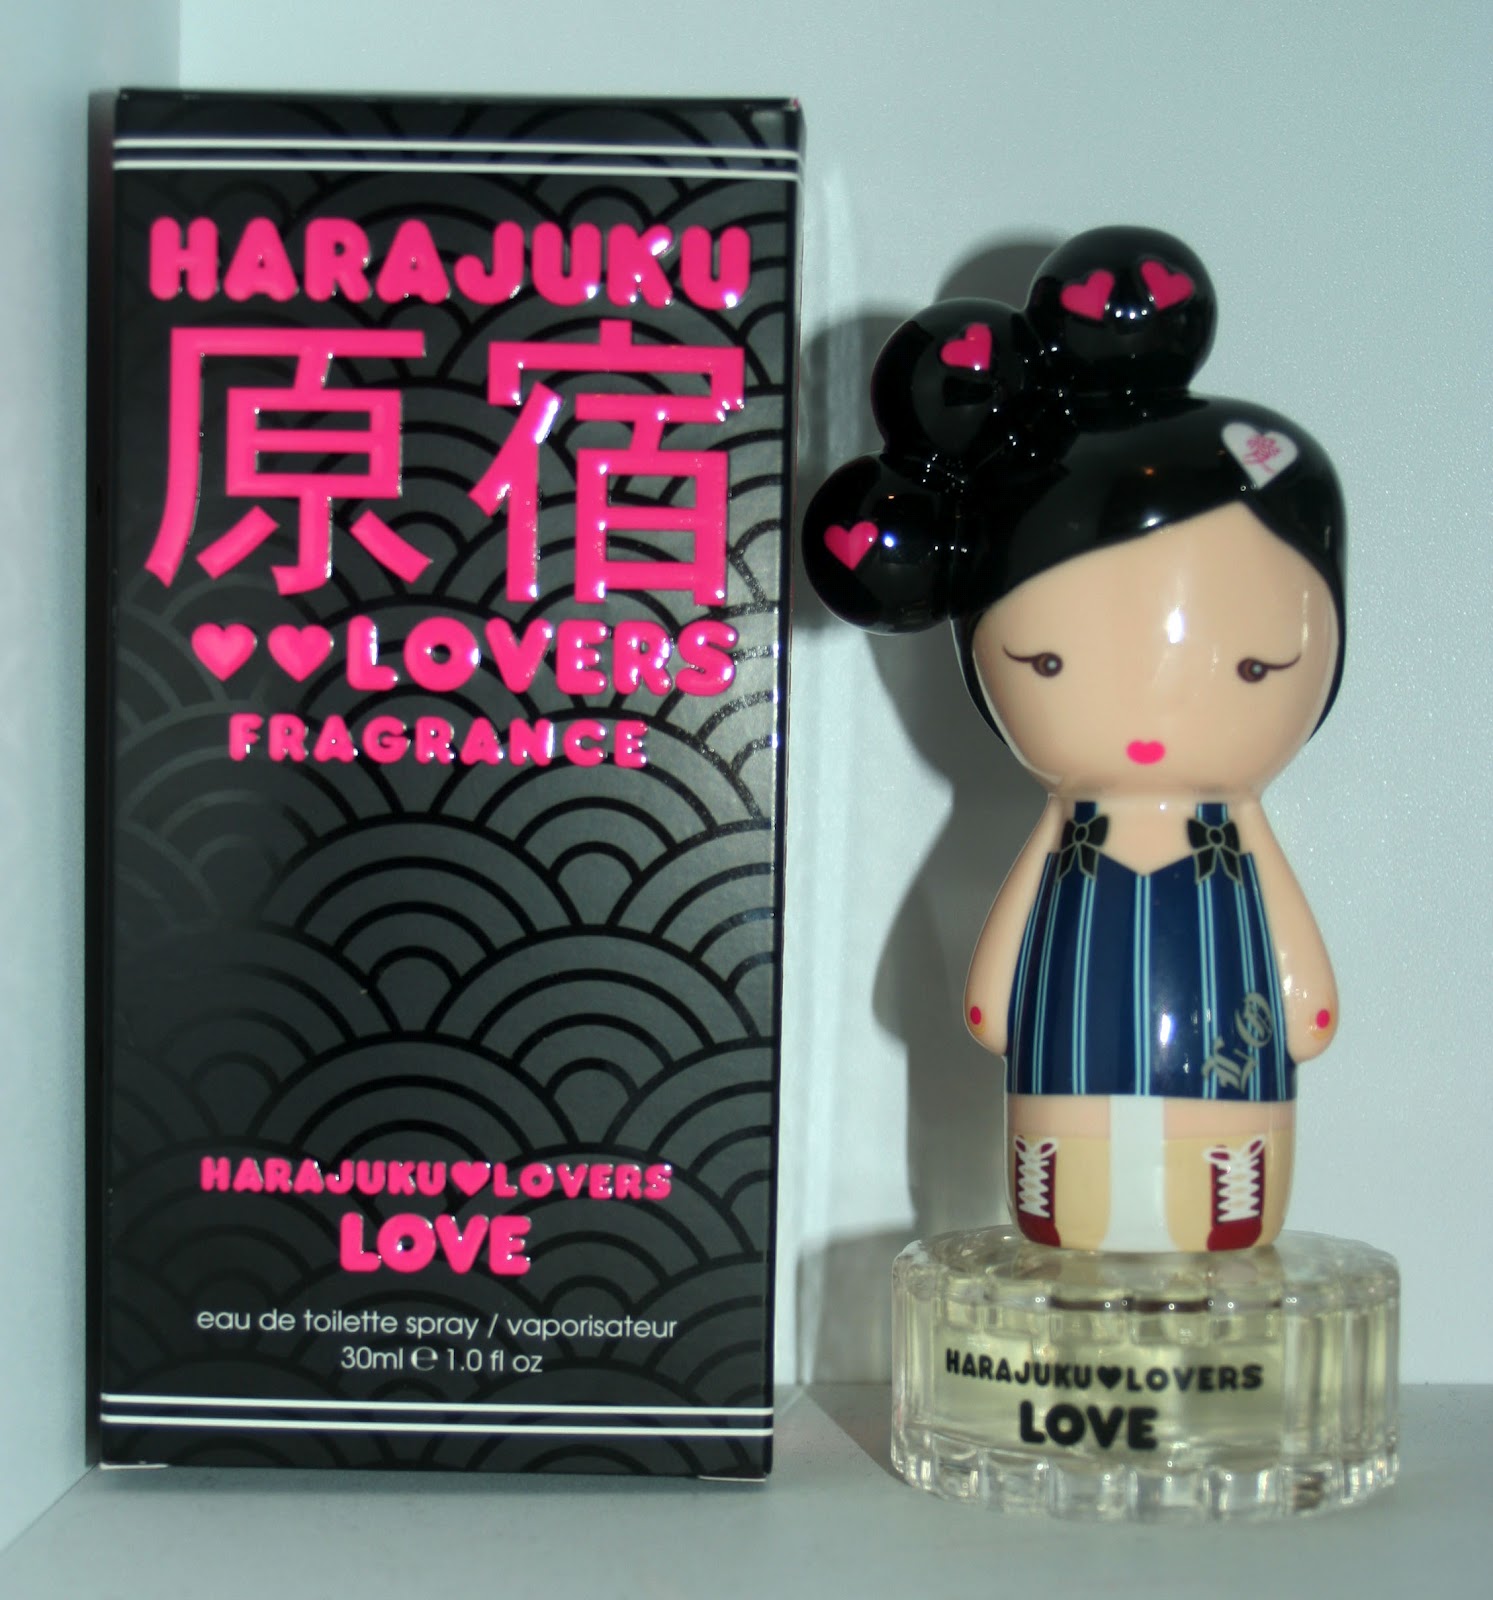 Духи Harajuku lovers Wicked Style. Harajuku lovers наушники. Harajuku lovers Love. Perfume of Love игра. Лове ловер